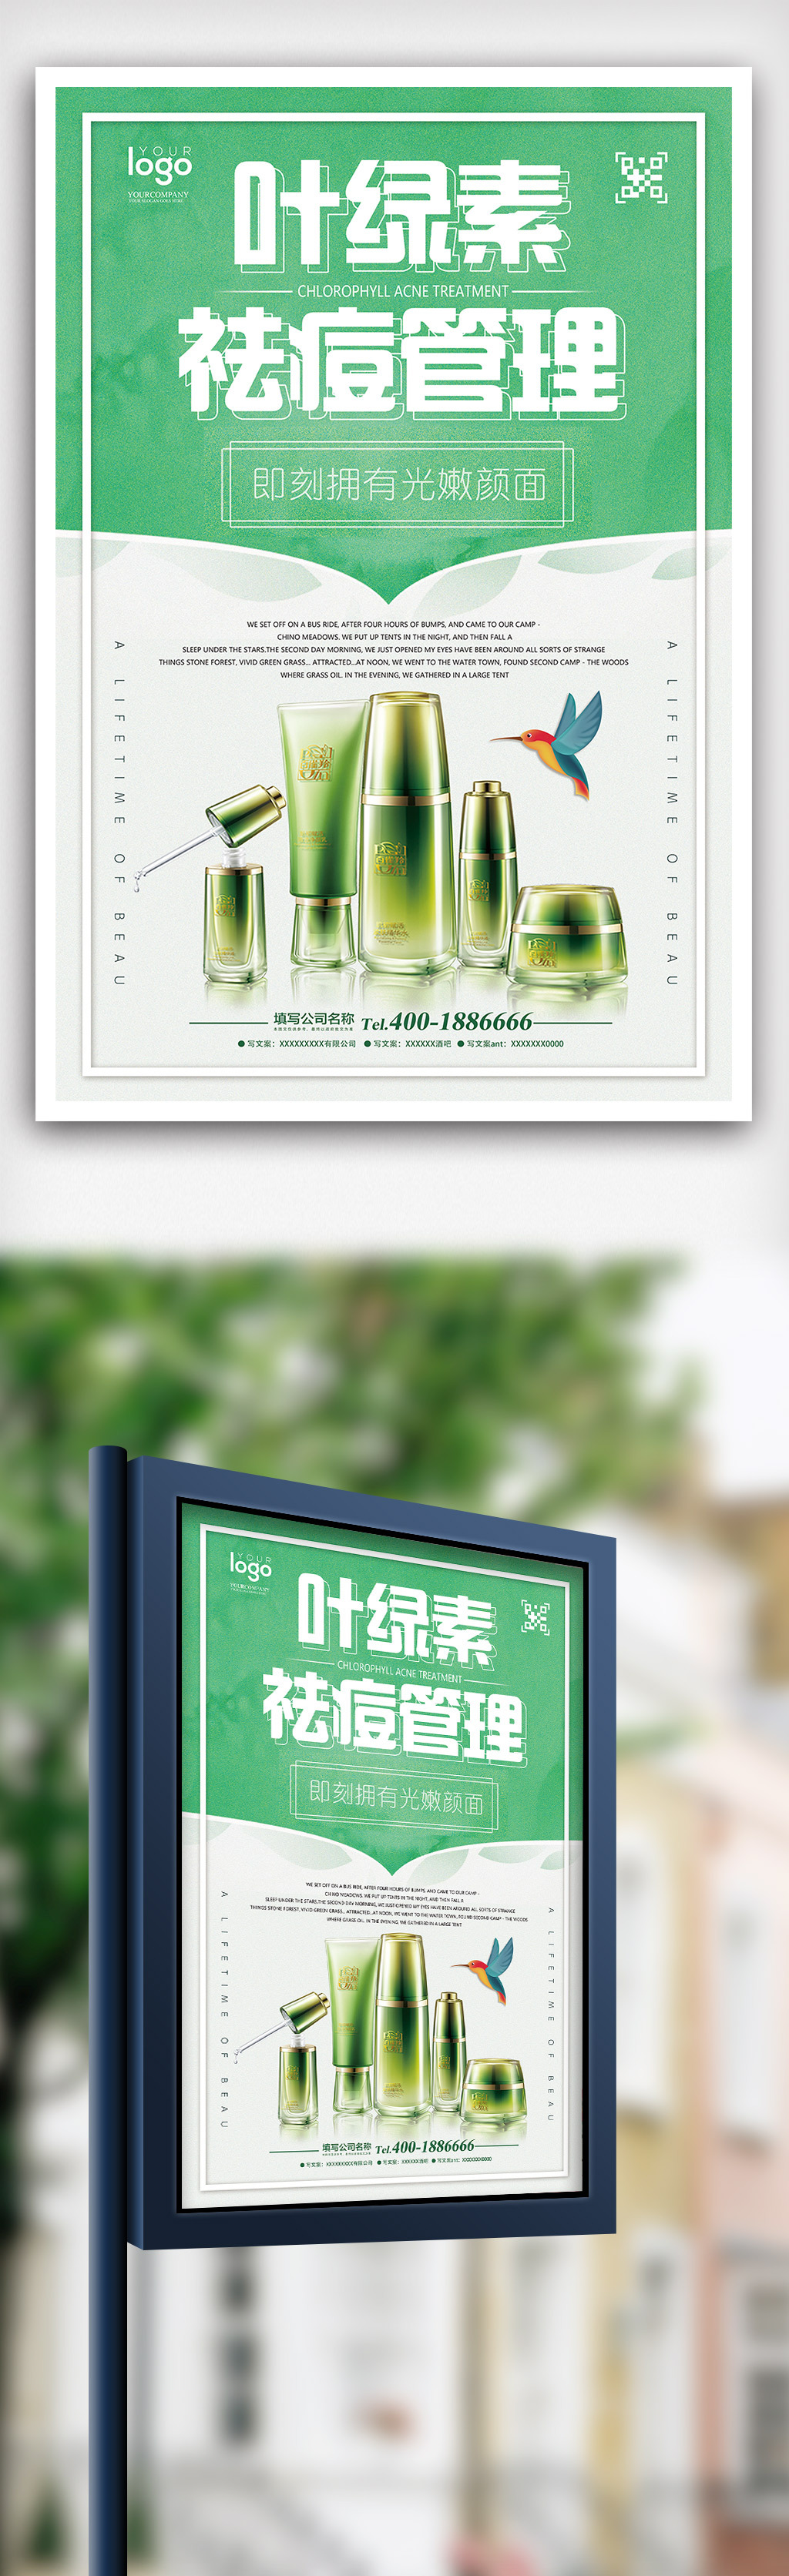 2018年绿色清新叶绿素祛痘管理护肤海报图片